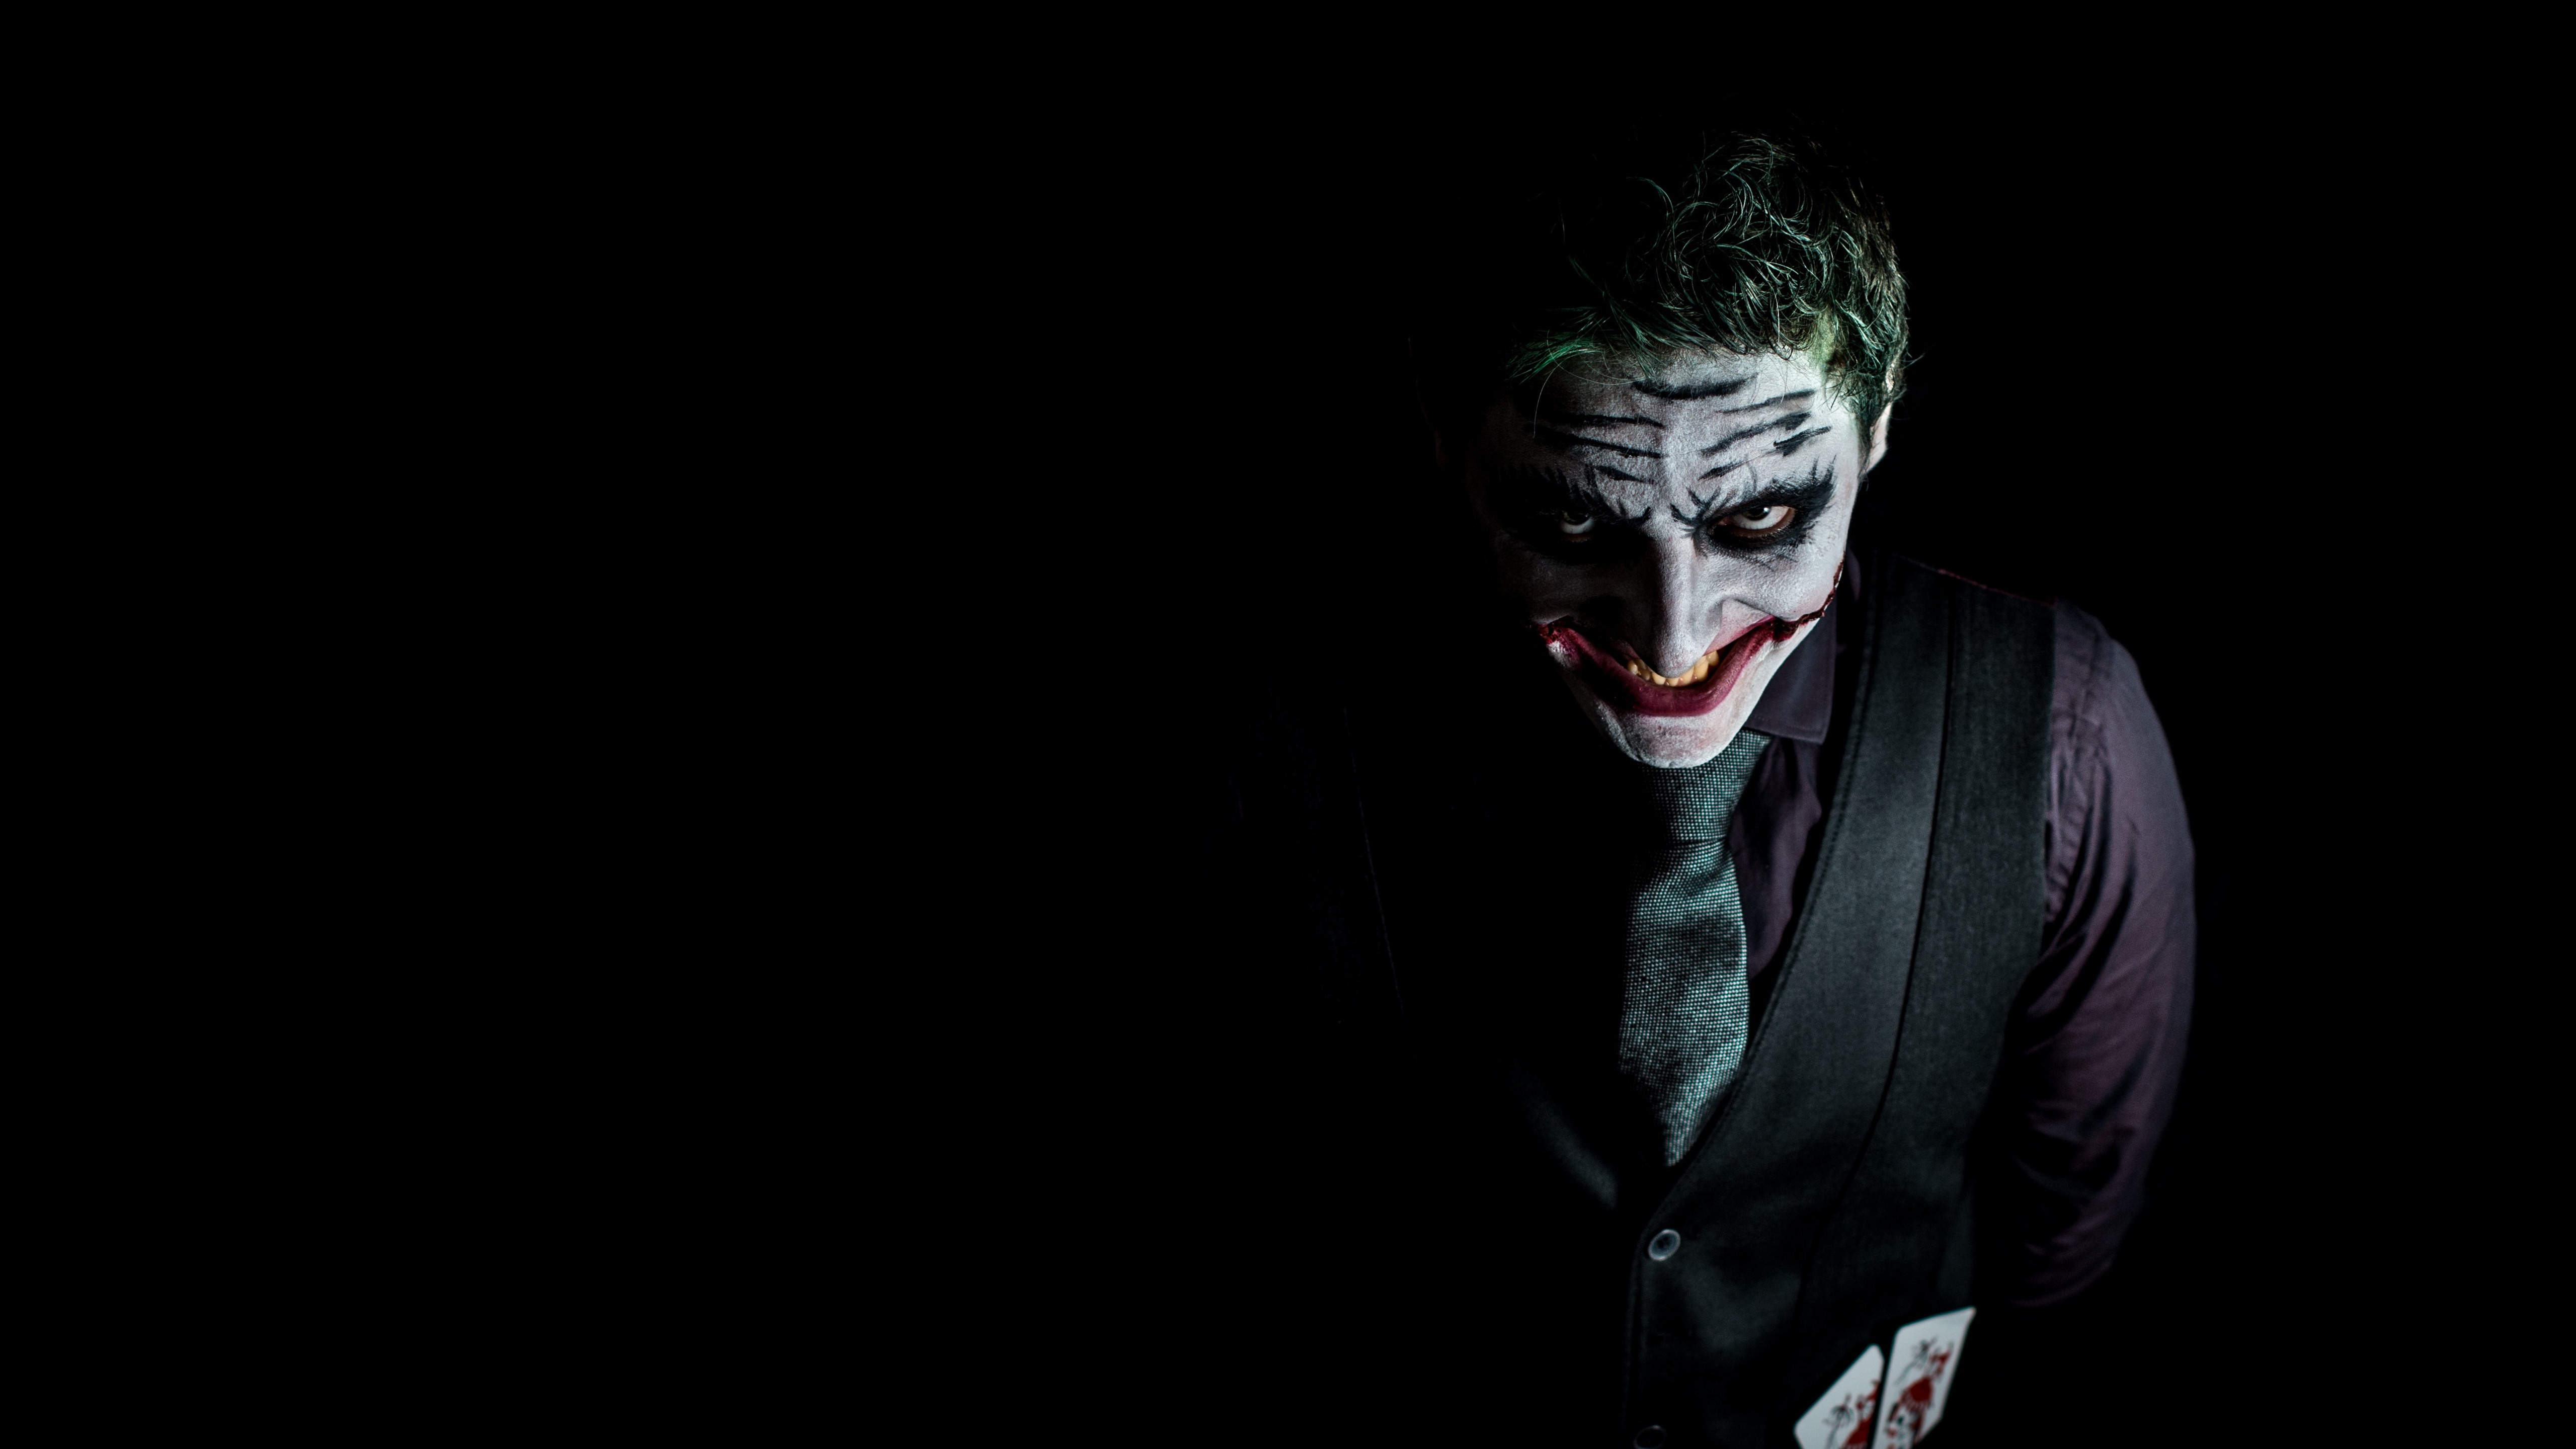 Wallpaper Joker, Black Background - Best Attitude Joker Status For Whatsapp  - 5120x2880 Wallpaper 